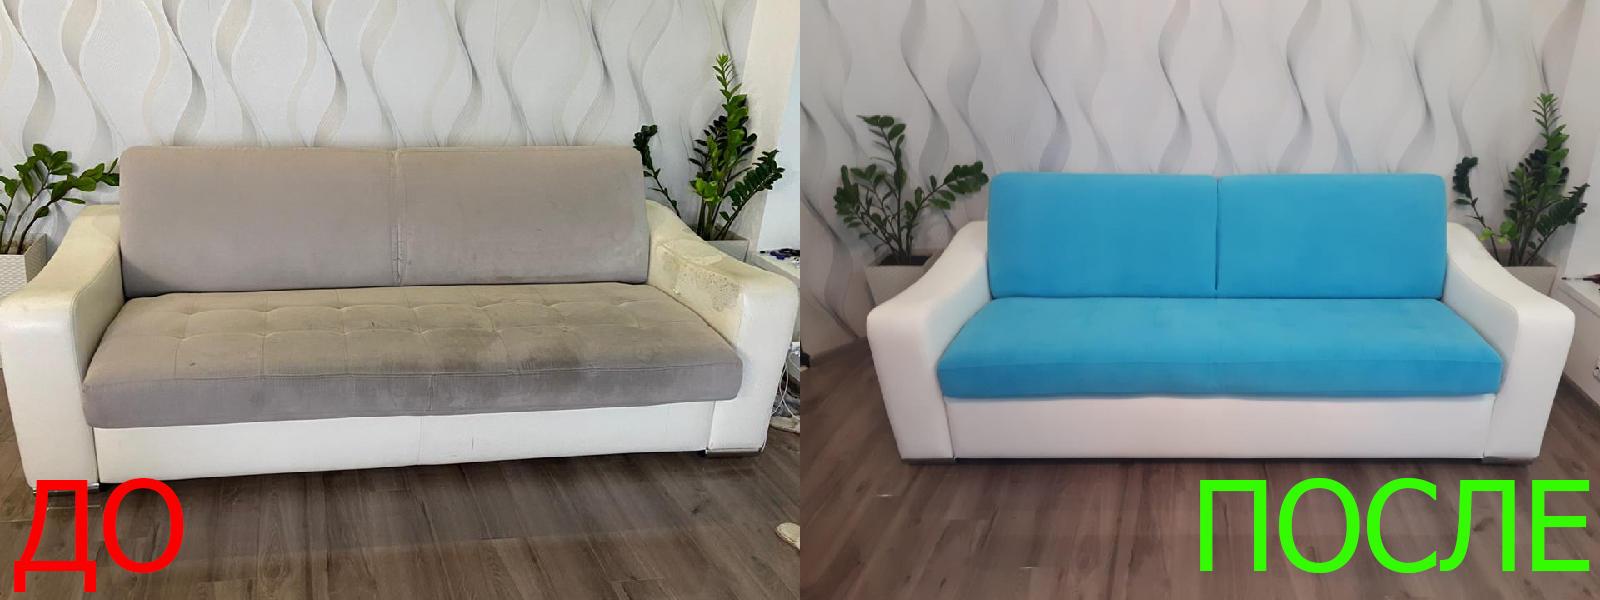 Обтяжка мягкой мебели в Керчи - пришлите фото для расчета стоимости